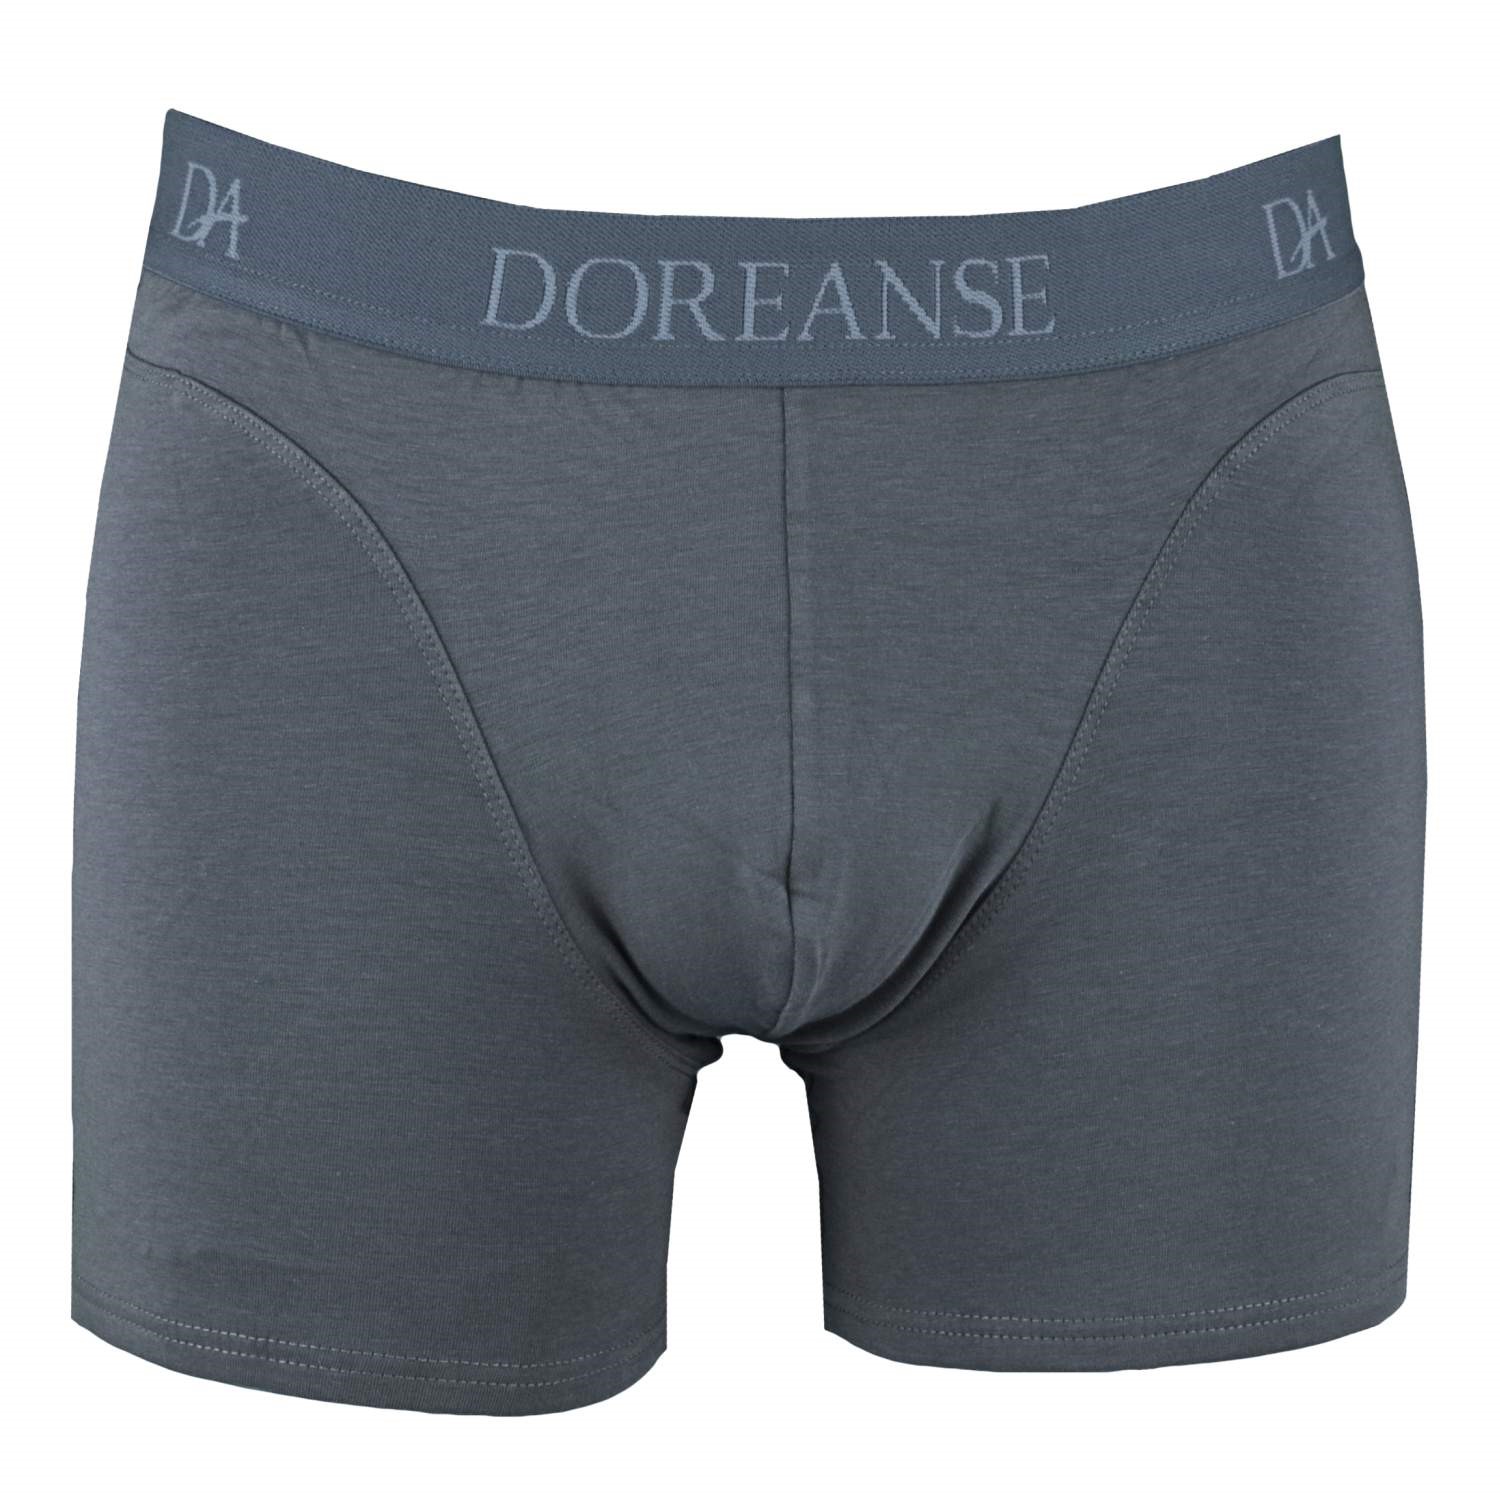 Doreanse Basic Boxer 1772 - Boxer - Trunks - Underwear - Timarco.co.uk